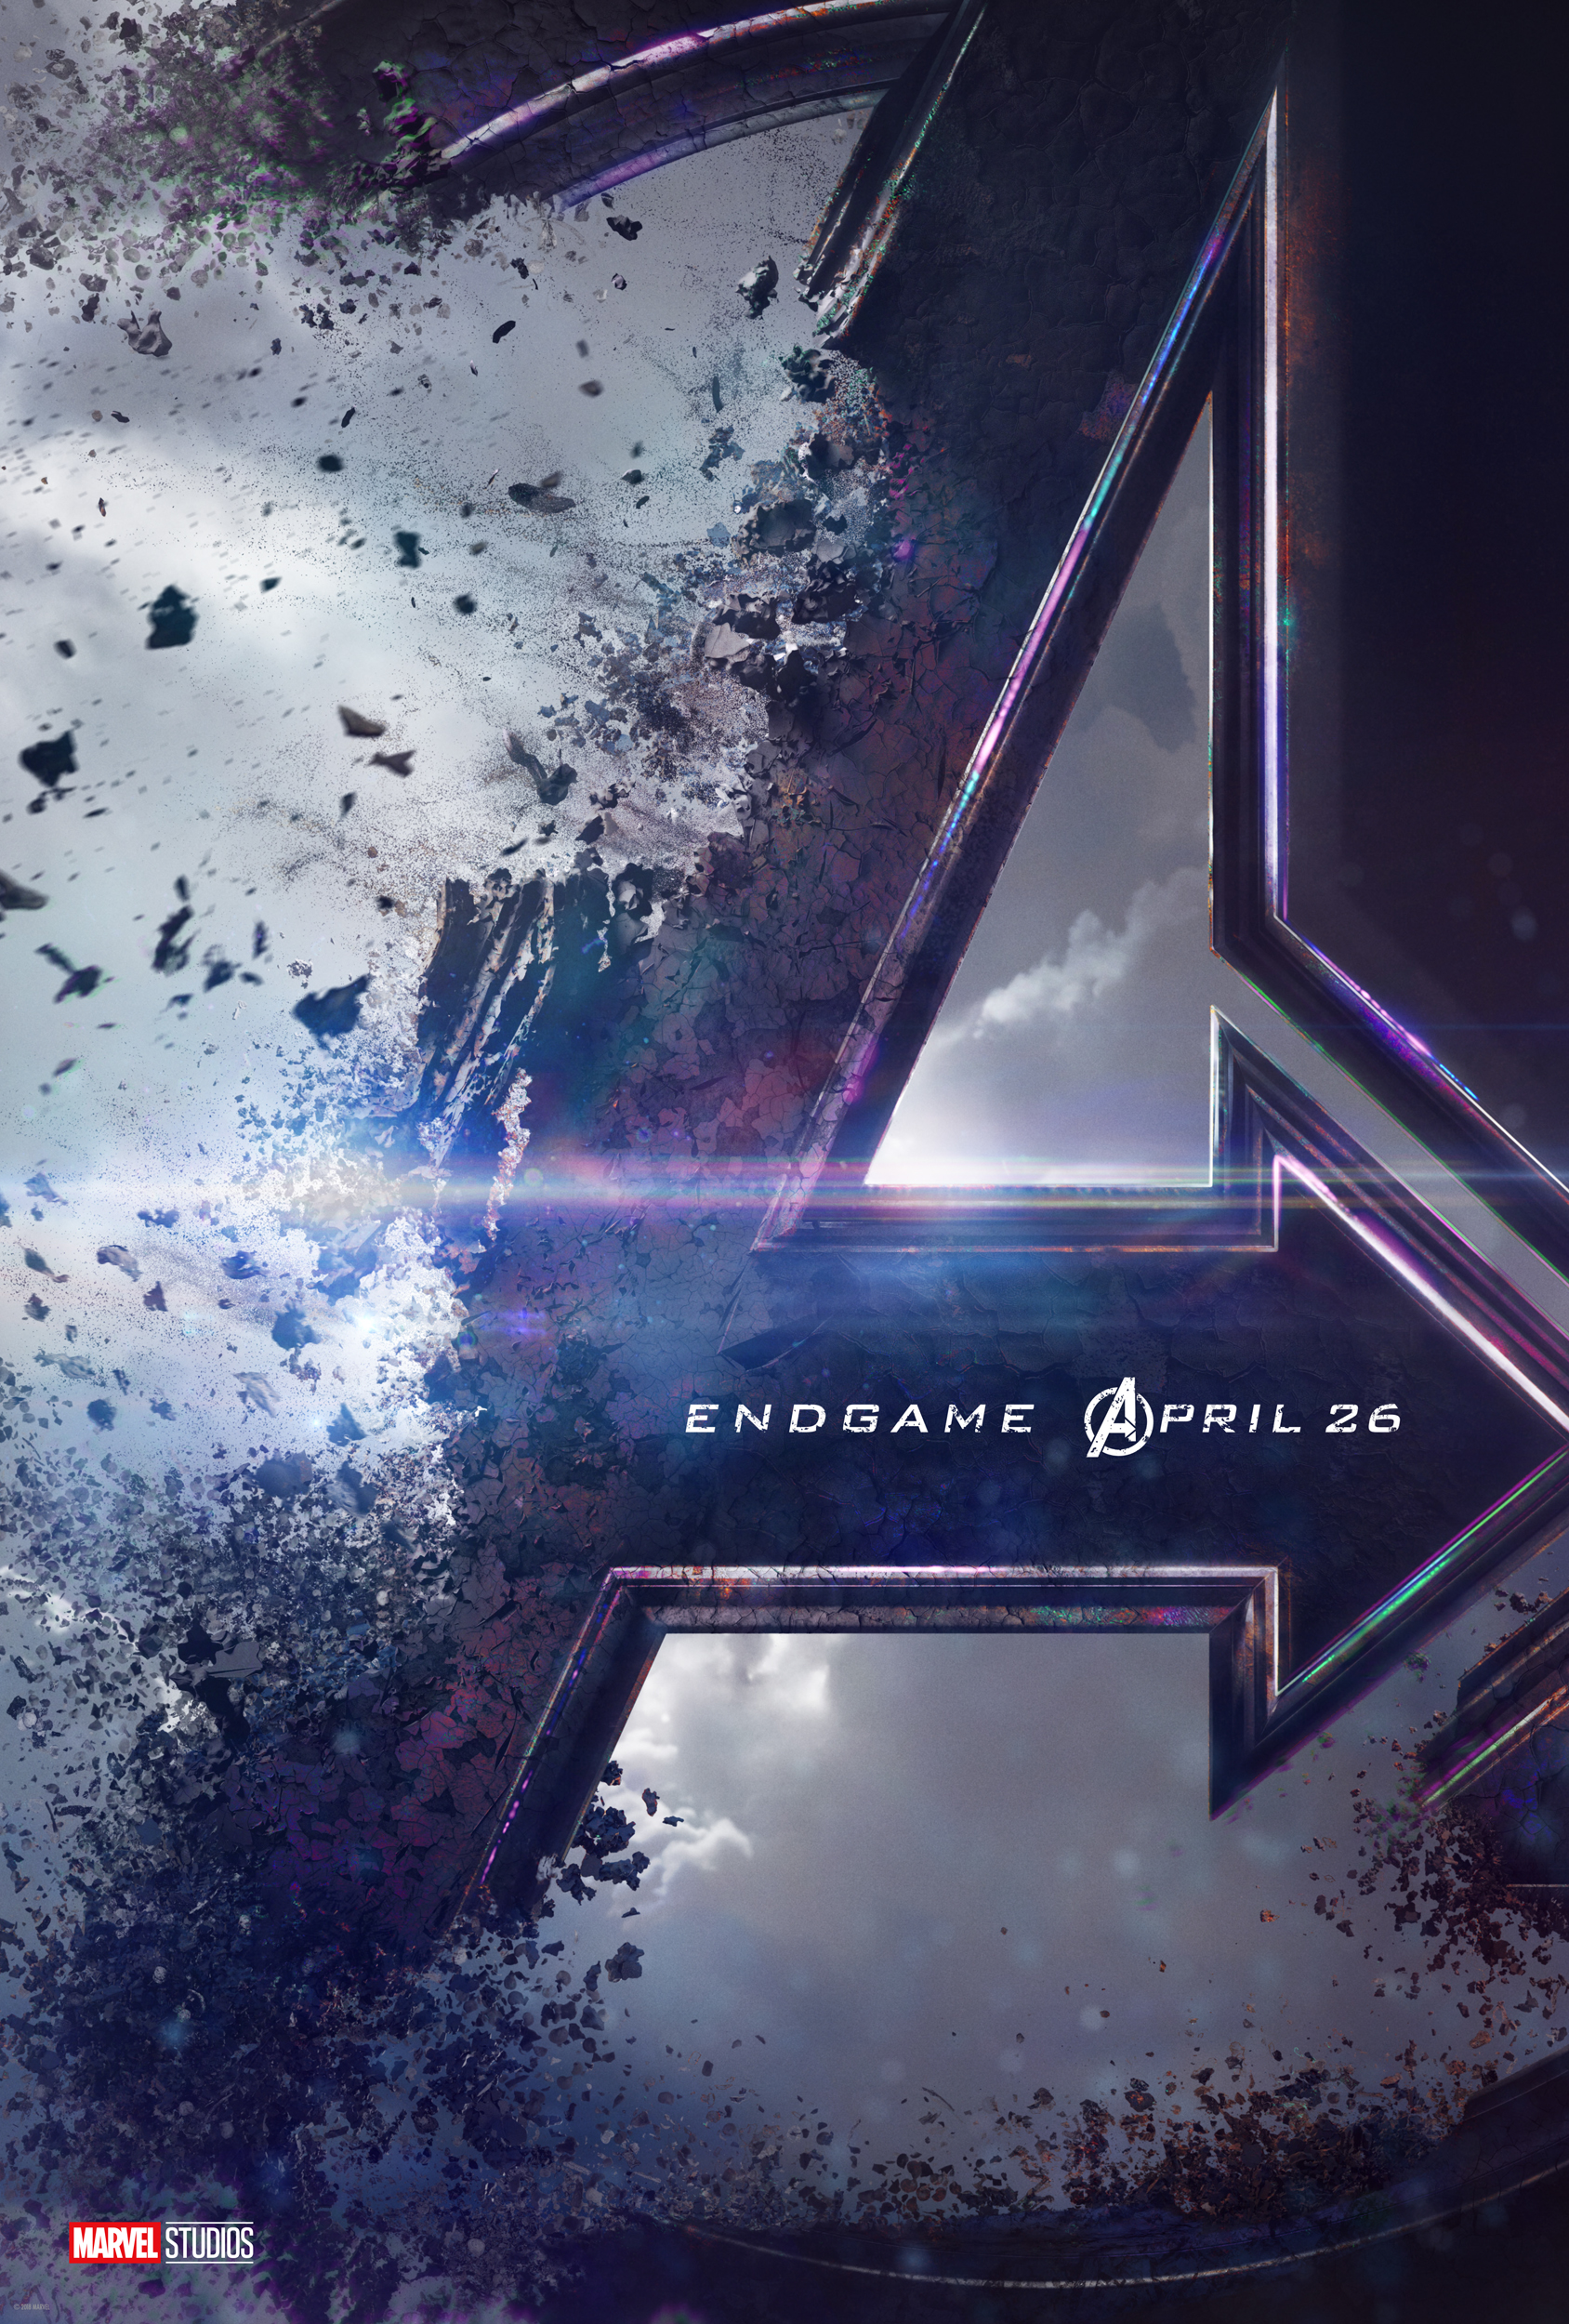 Avengers Endgame Teaser Poster Released Ign